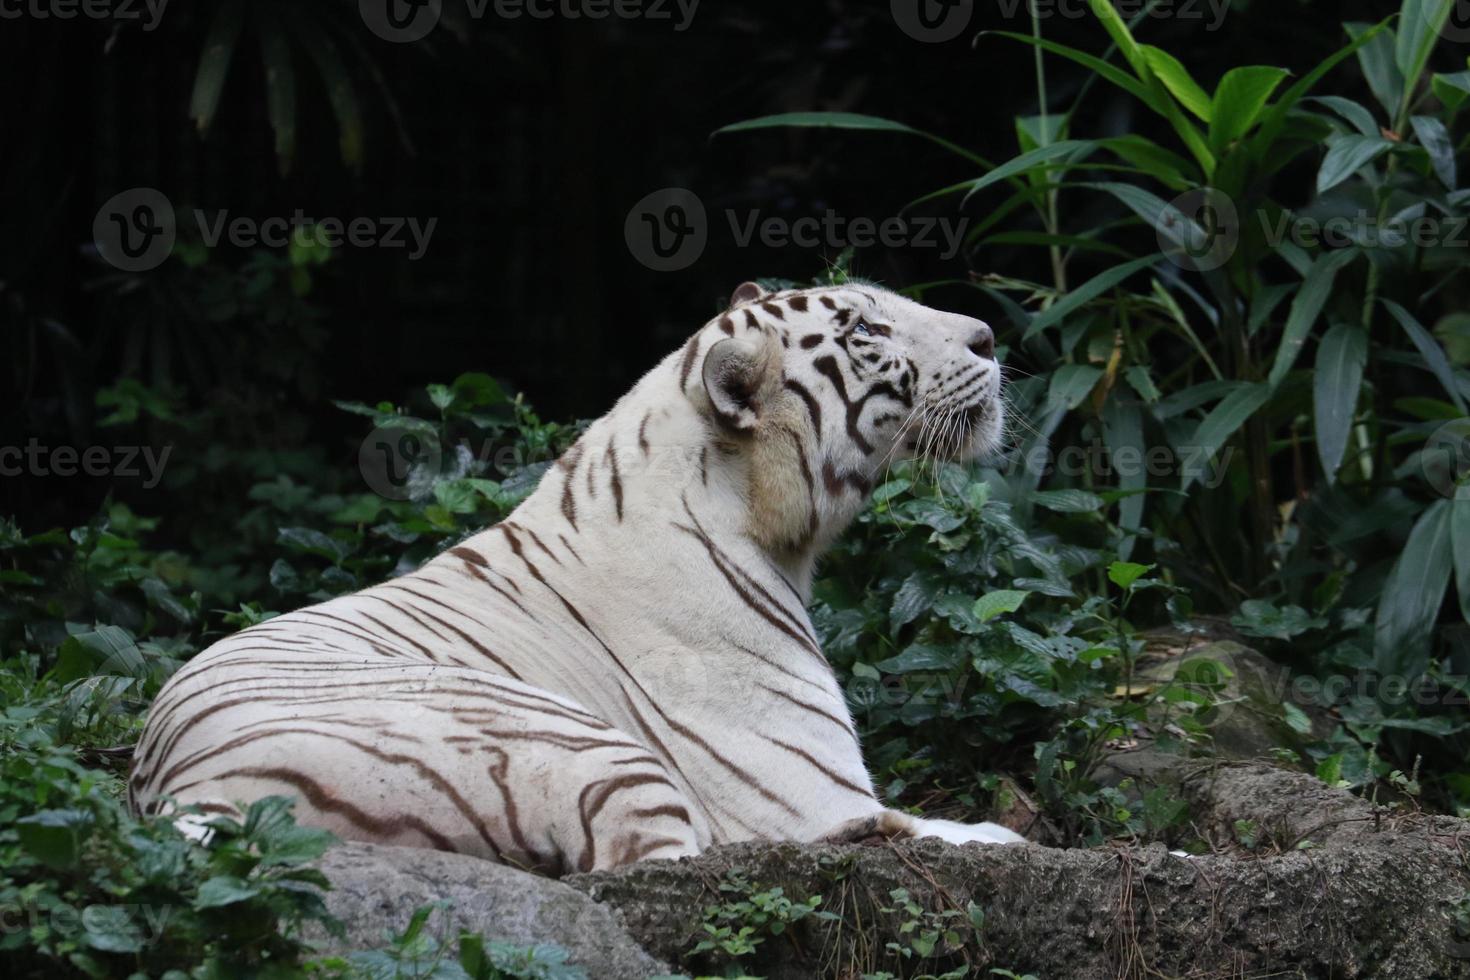 vit tiger Sammanträde runt om foto